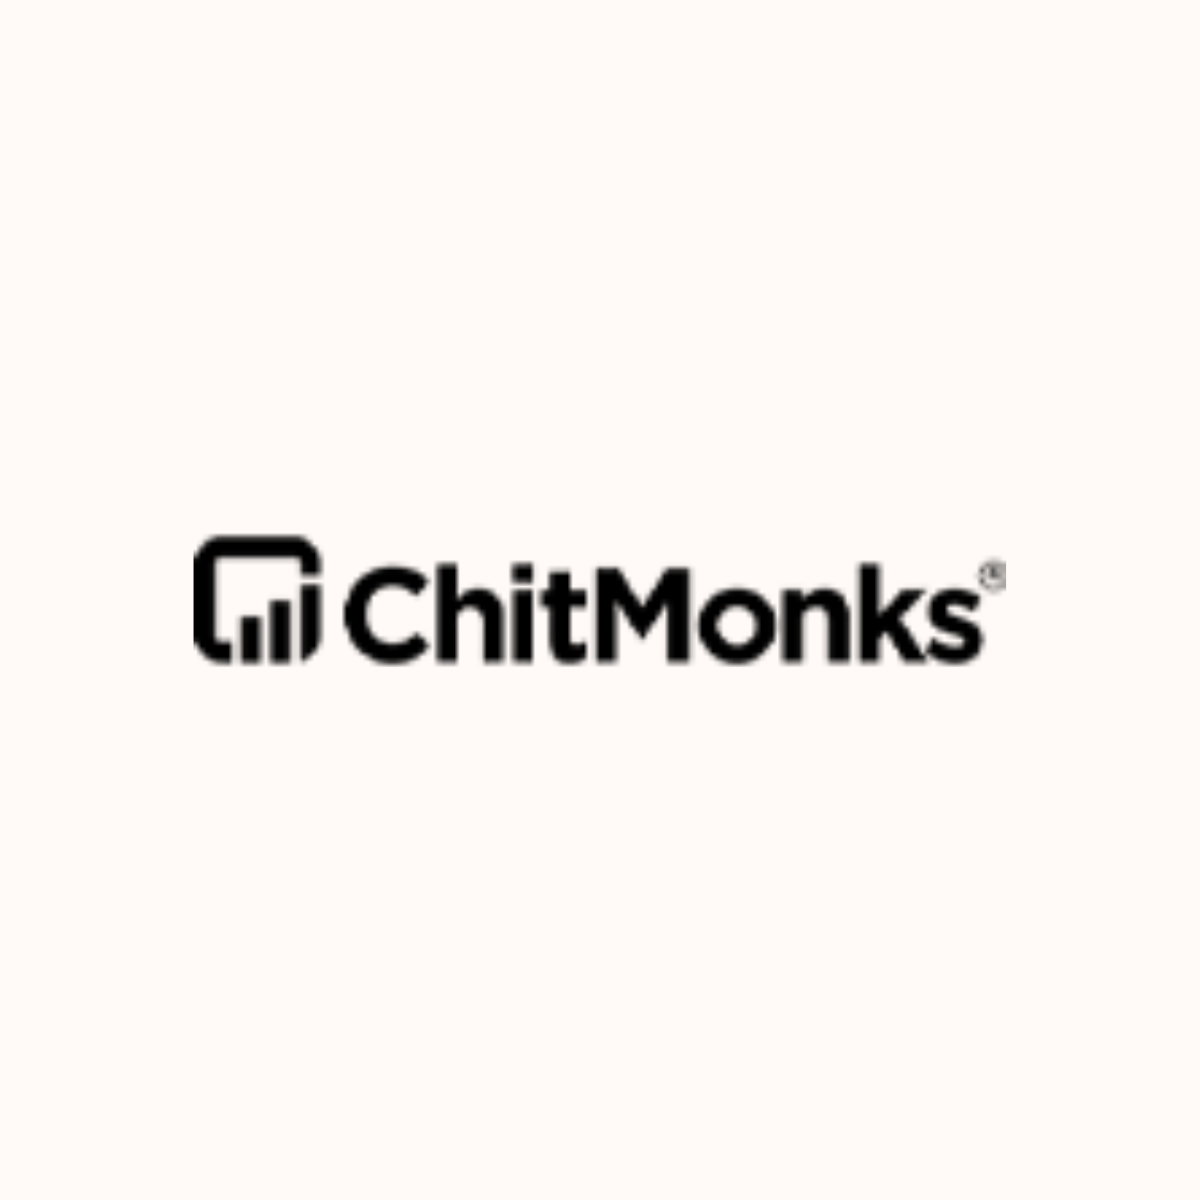 Chitmonks